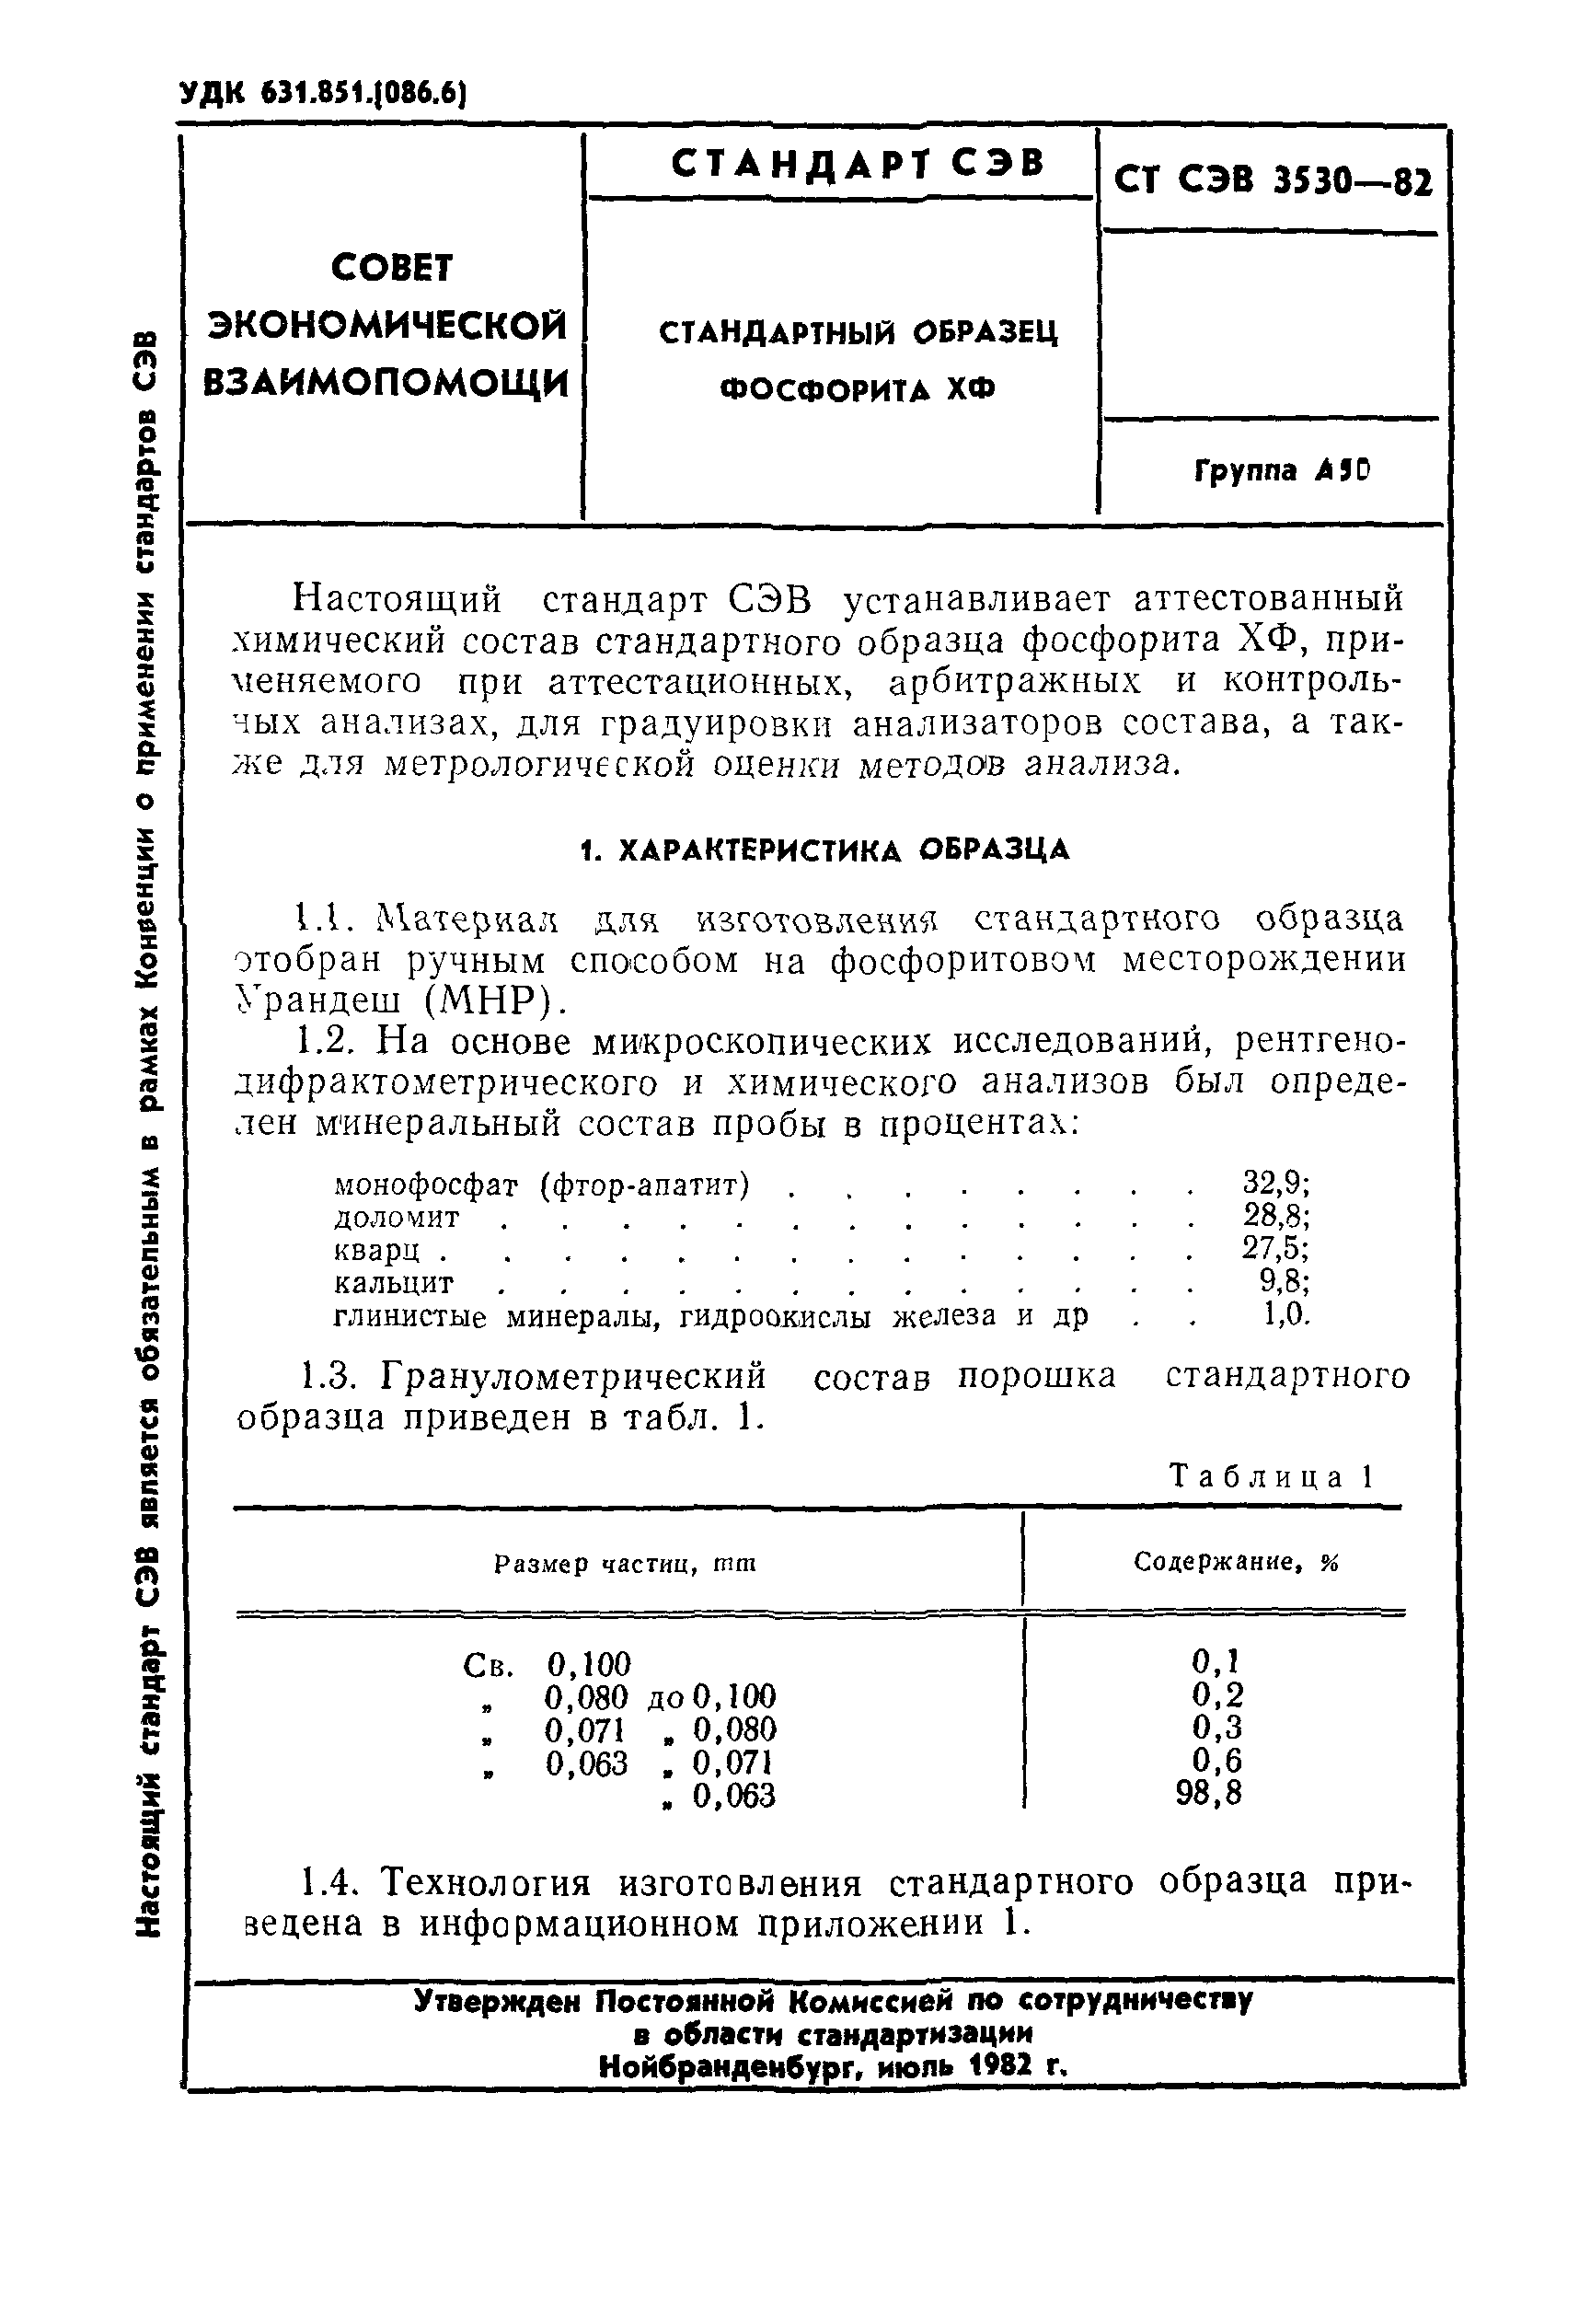 СТ СЭВ 3530-82